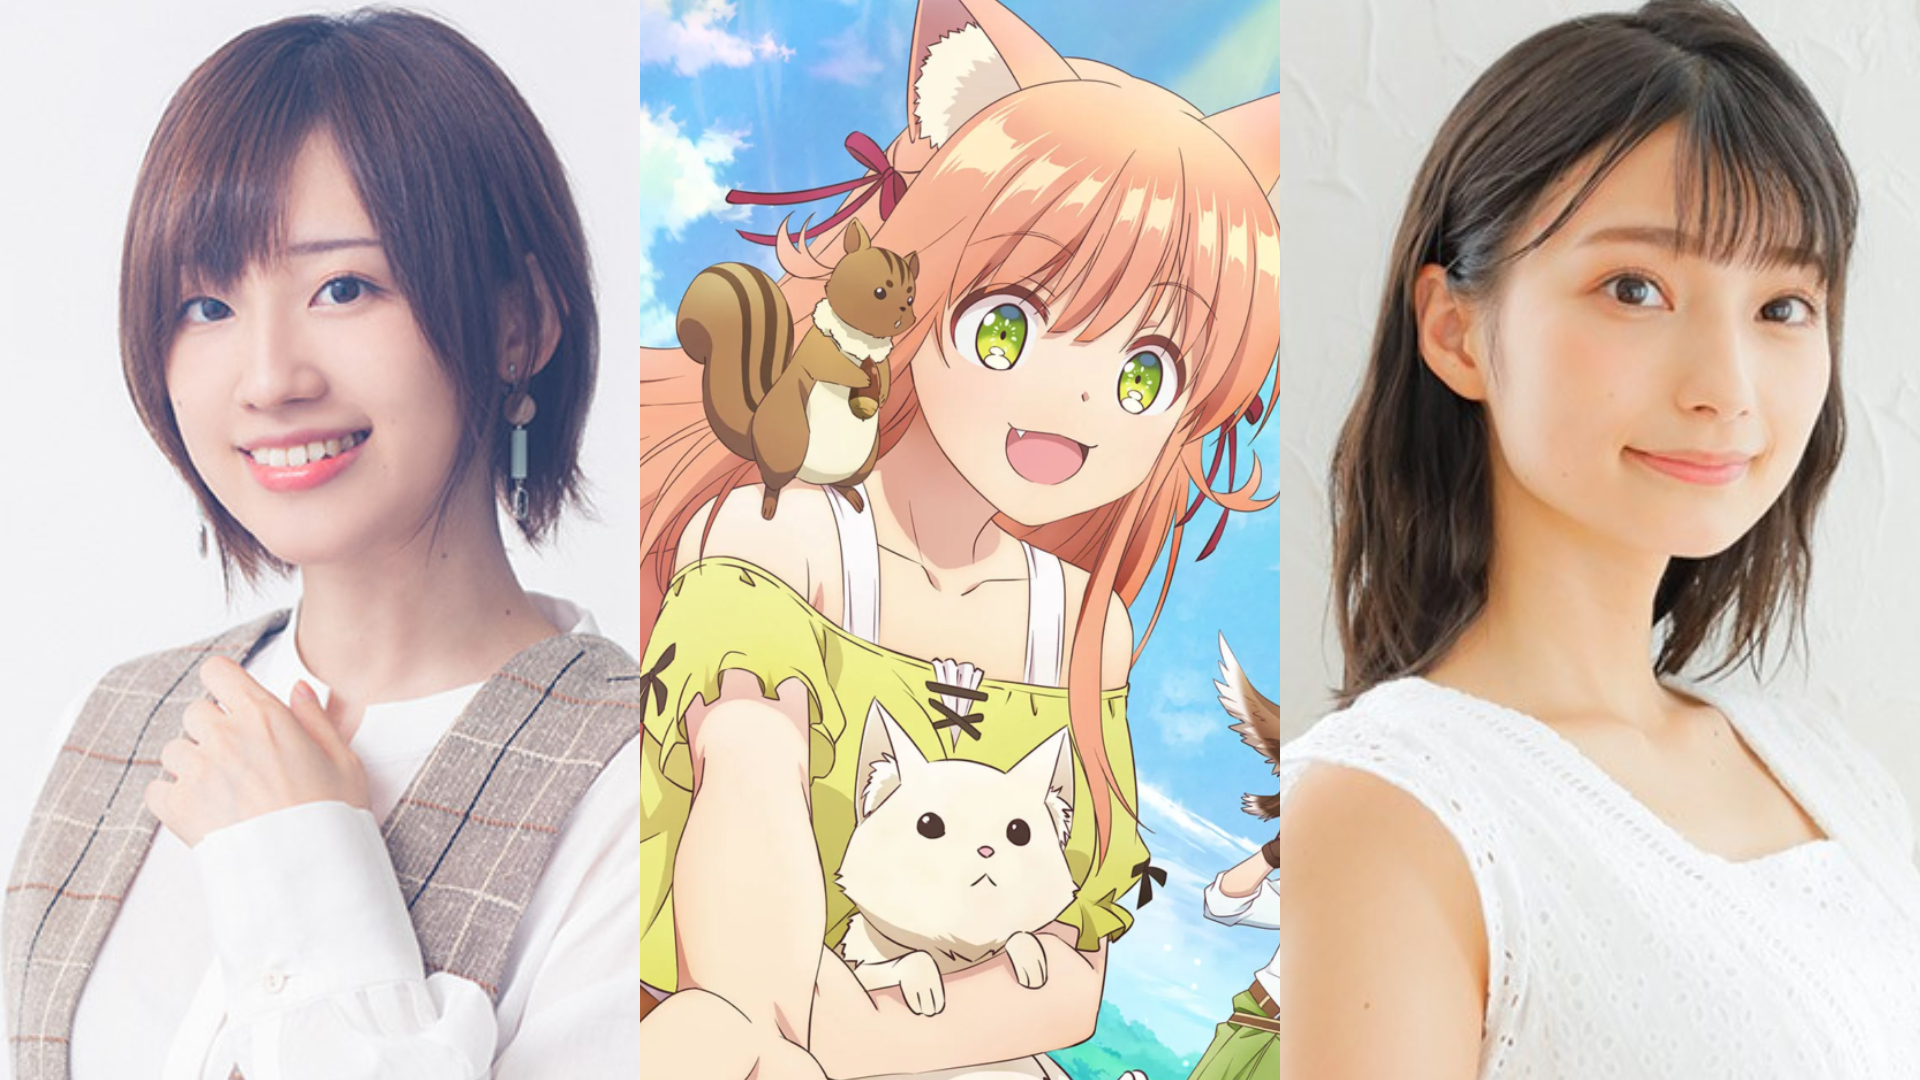 Beast Tamer Anime Casts Marika Kōno, Rie Takahashi - News - Anime News  Network